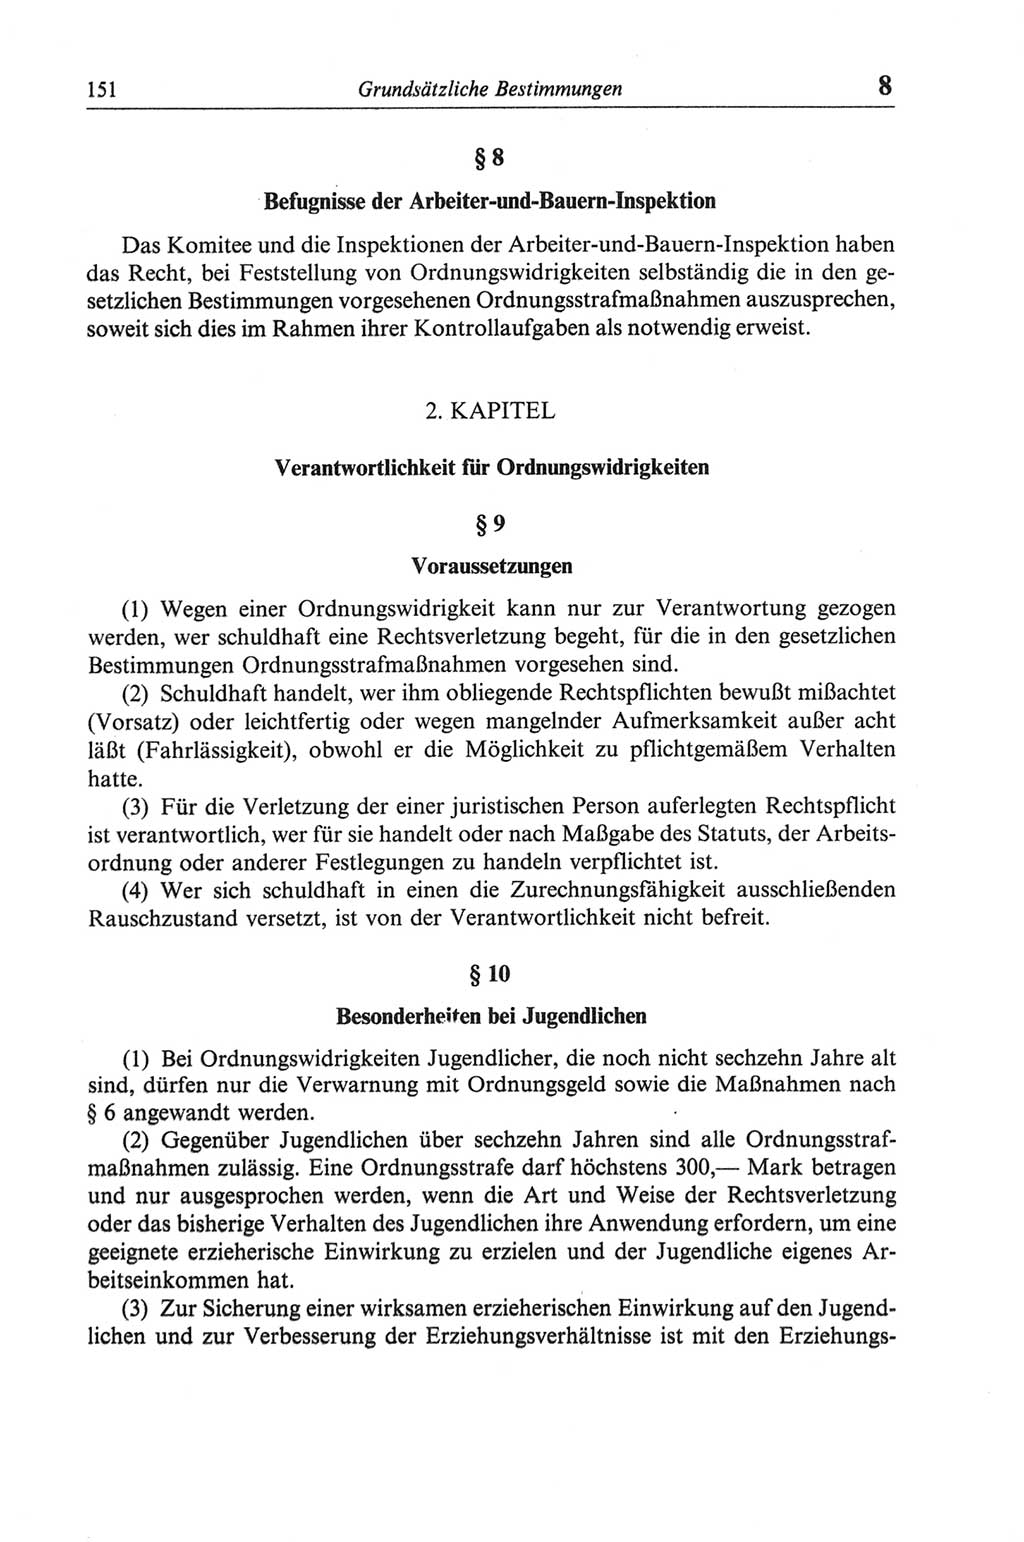 Strafgesetzbuch (StGB) der Deutschen Demokratischen Republik (DDR) und angrenzende Gesetze und Bestimmungen 1968, Seite 151 (StGB Ges. Best. DDR 1968, S. 151)